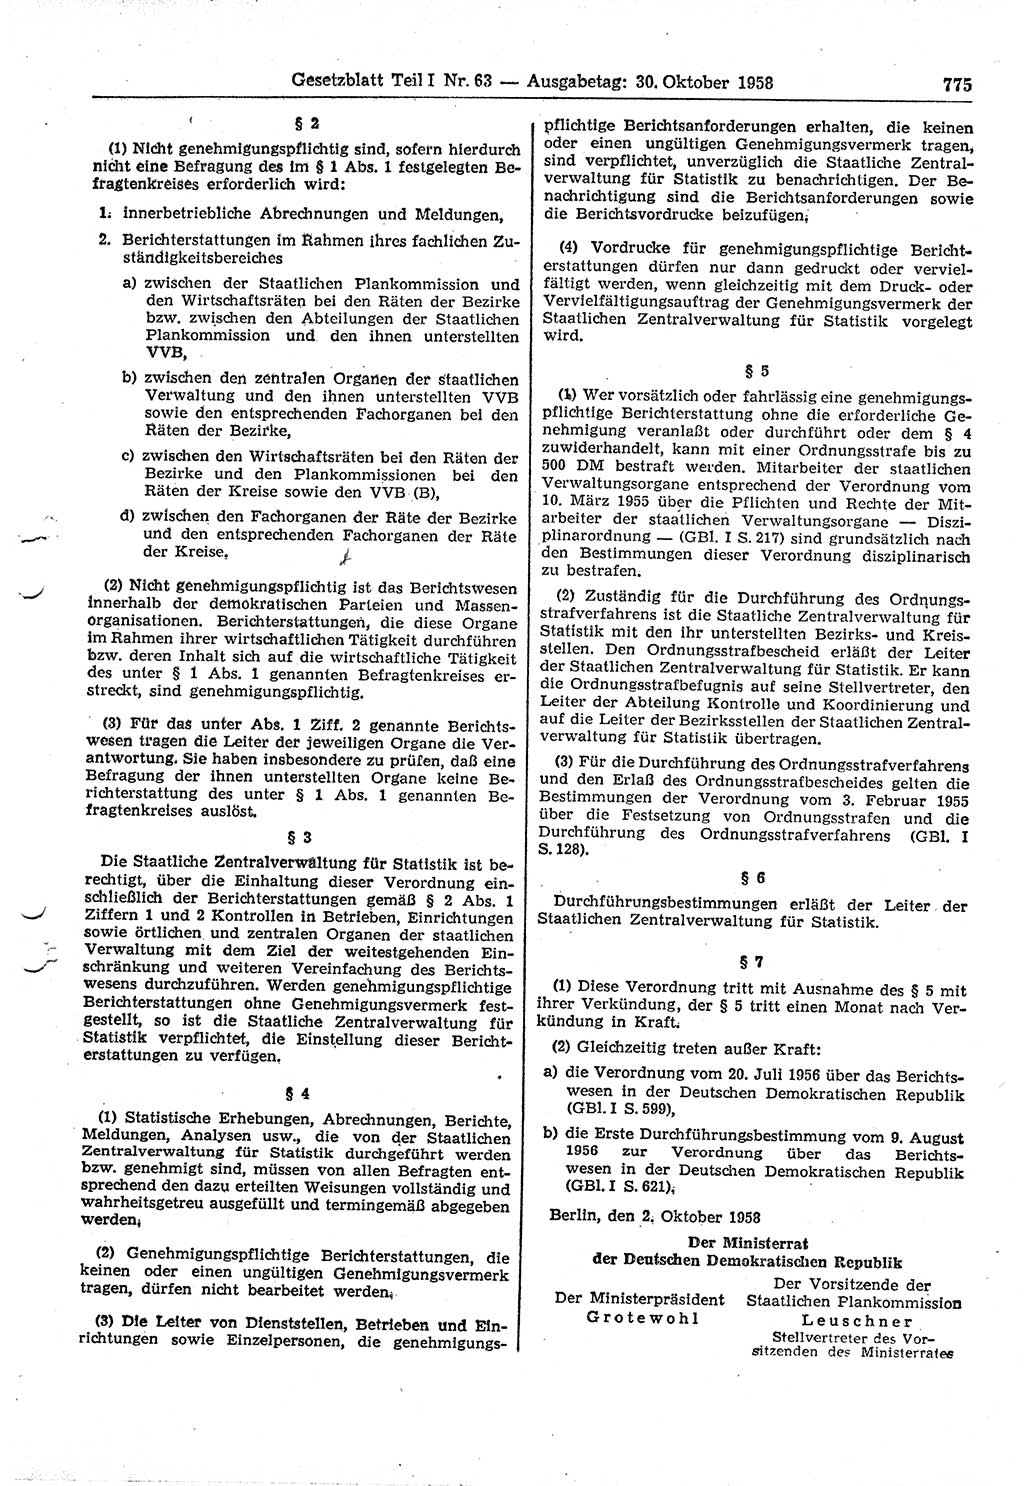 Gesetzblatt (GBl.) der Deutschen Demokratischen Republik (DDR) Teil Ⅰ 1958, Seite 775 (GBl. DDR Ⅰ 1958, S. 775)